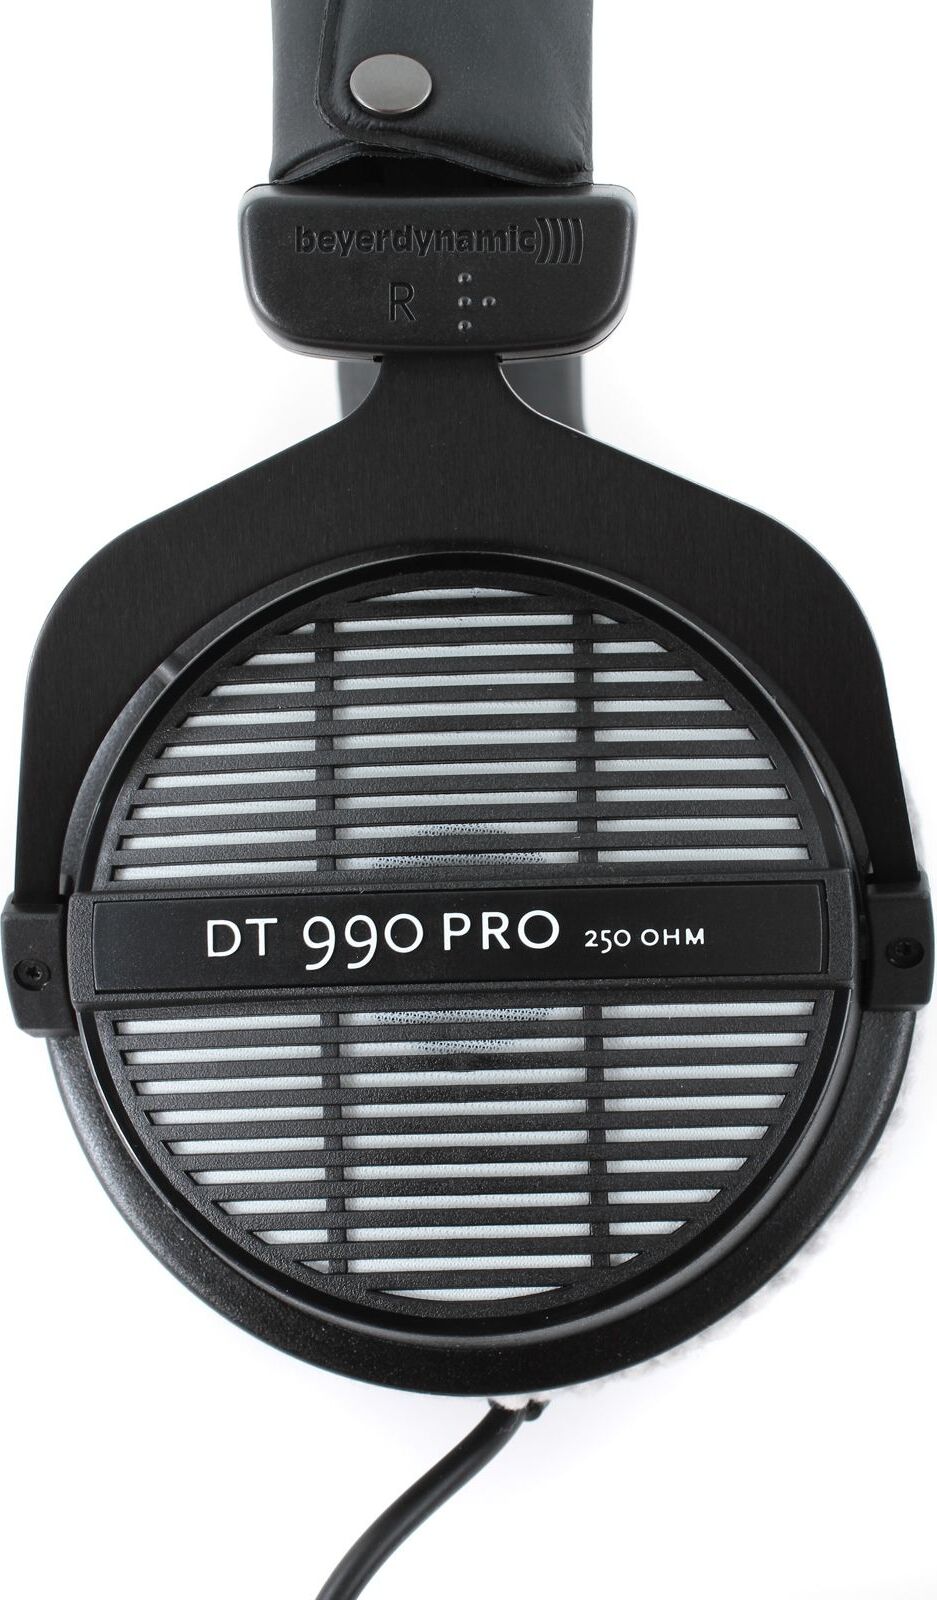 DT 990 Pro (Ouvert 250 Ohms)